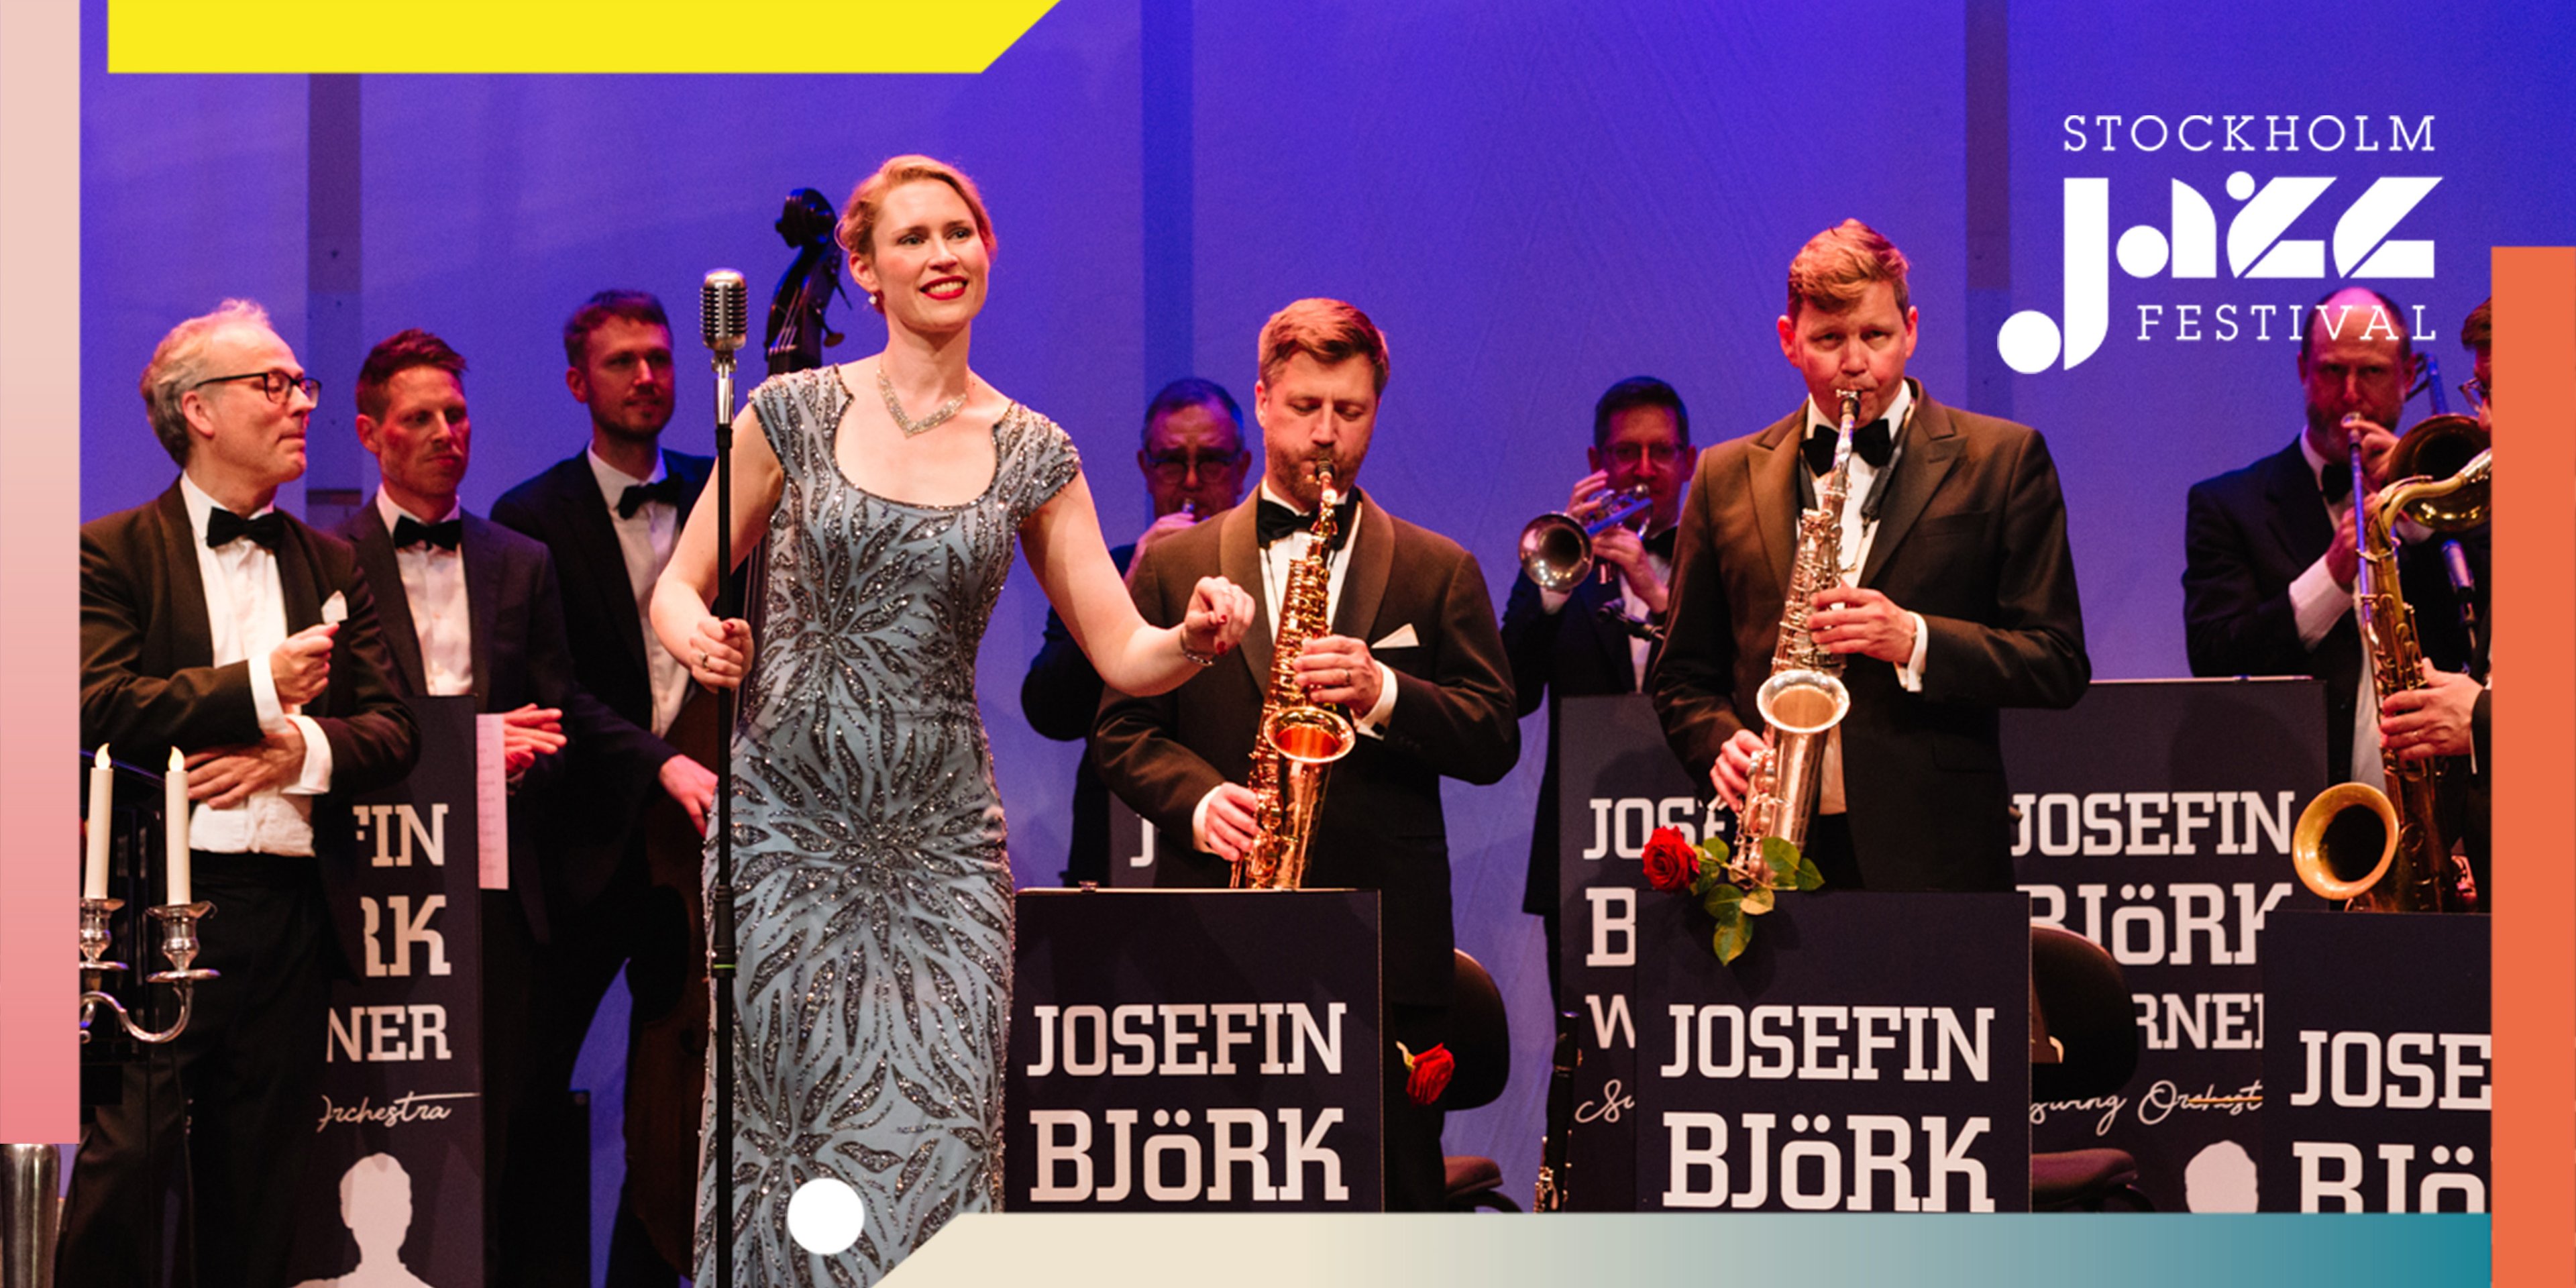 Josefin Björk Werner Swing Orchestra